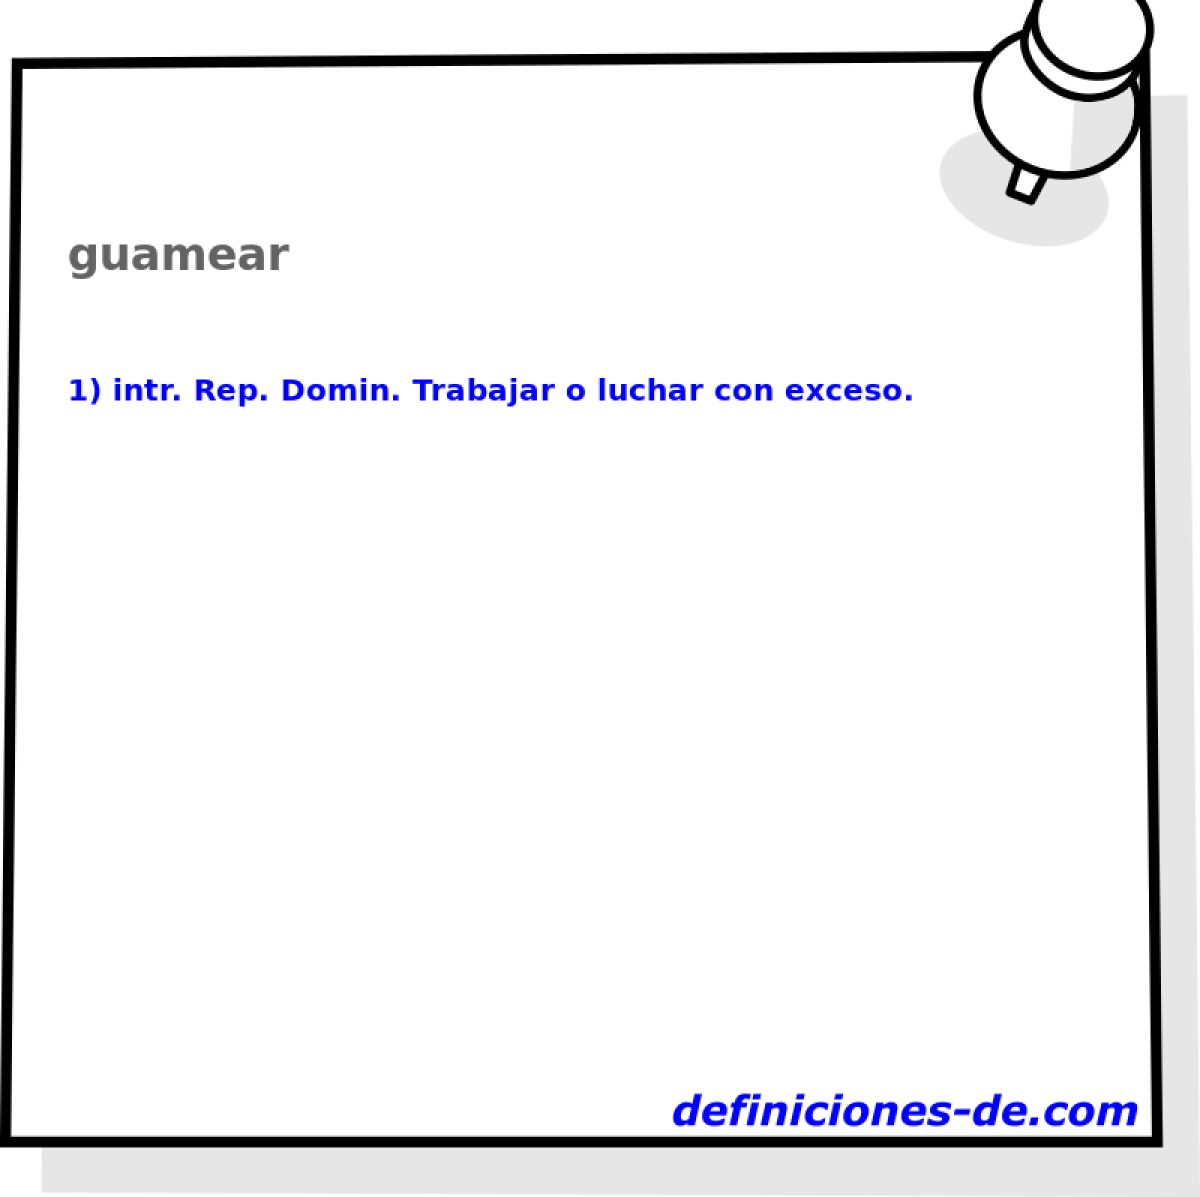 guamear 